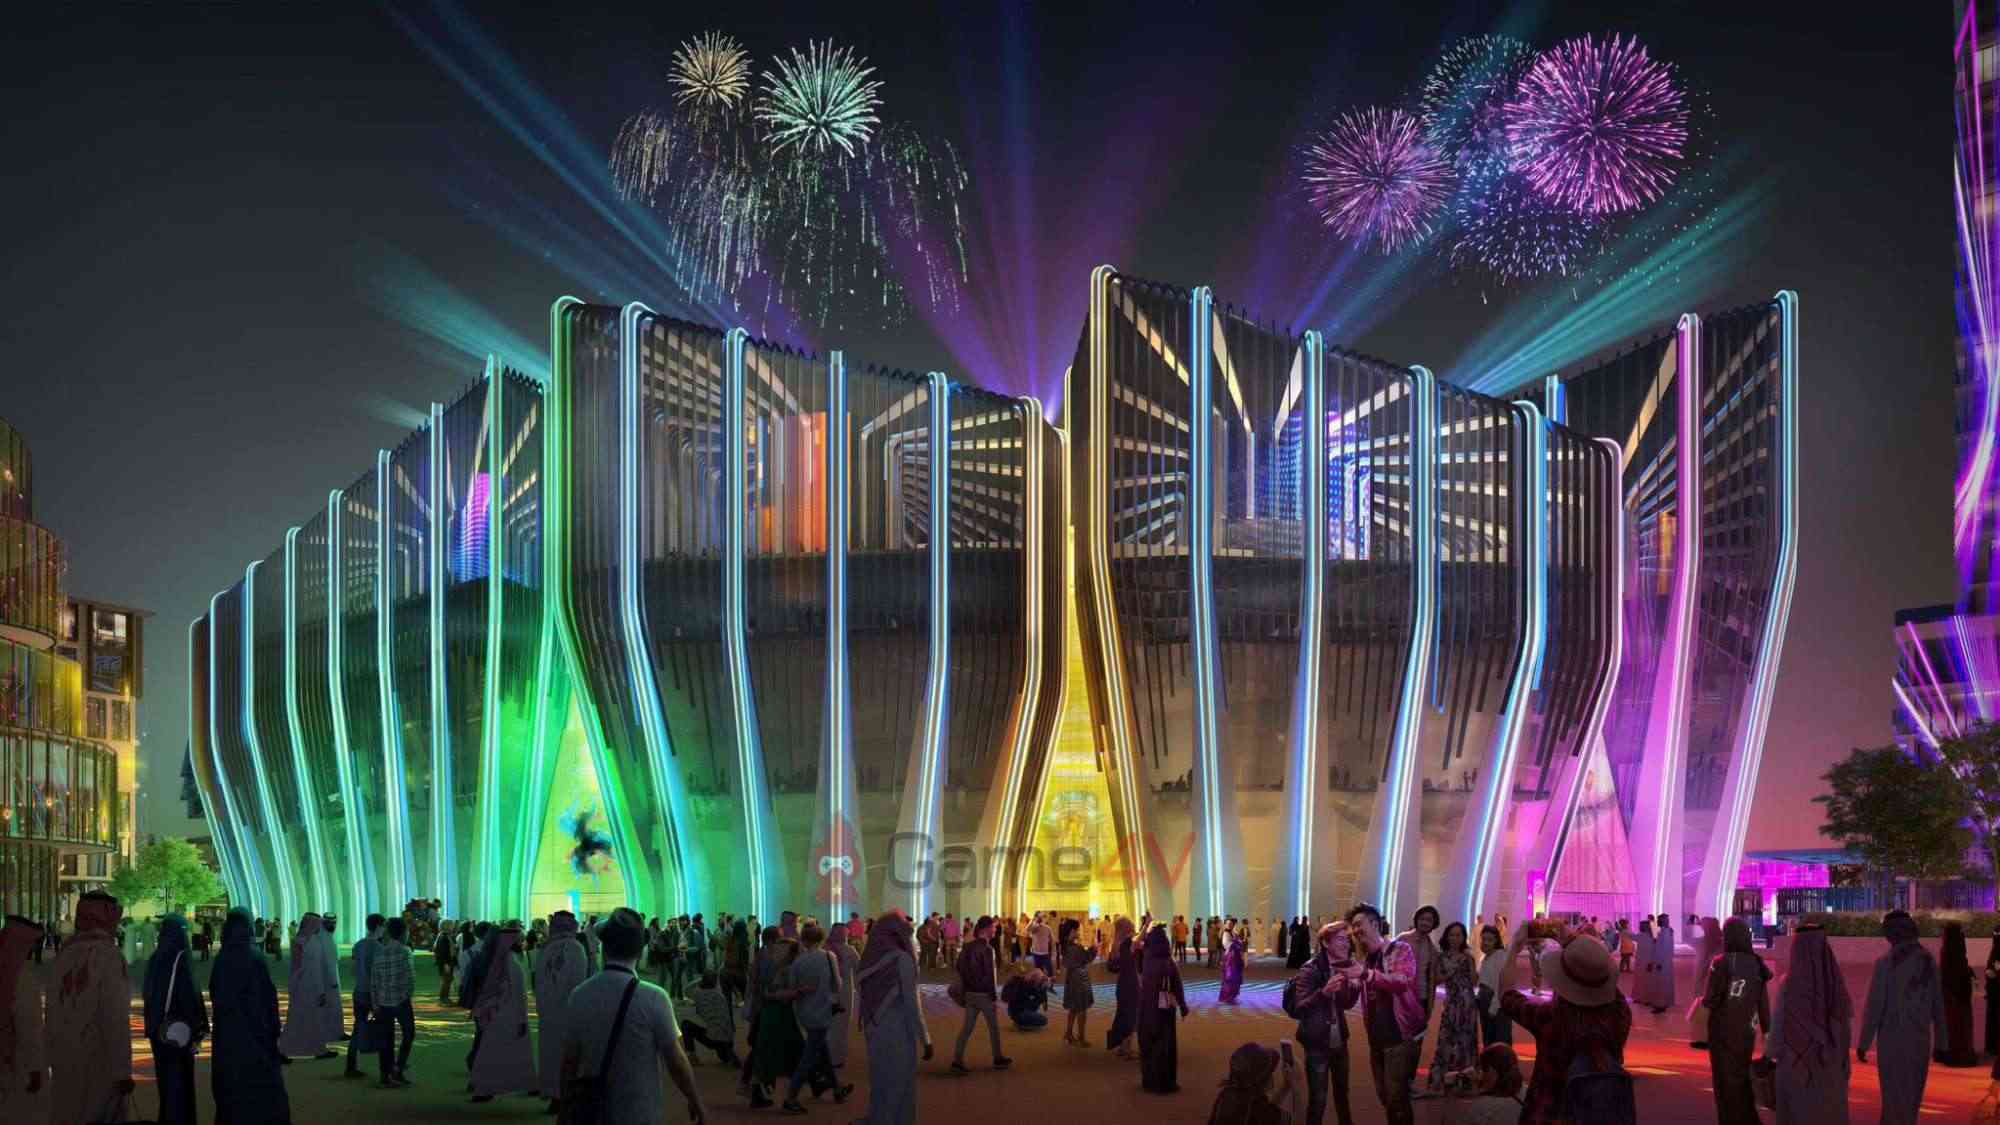 Khu thi đấu Esports này sẽ được xây dựng trên ở Qiddiya - siêu dự án giải trí nằm gần Riyadh (Ả Rập Xê-út).